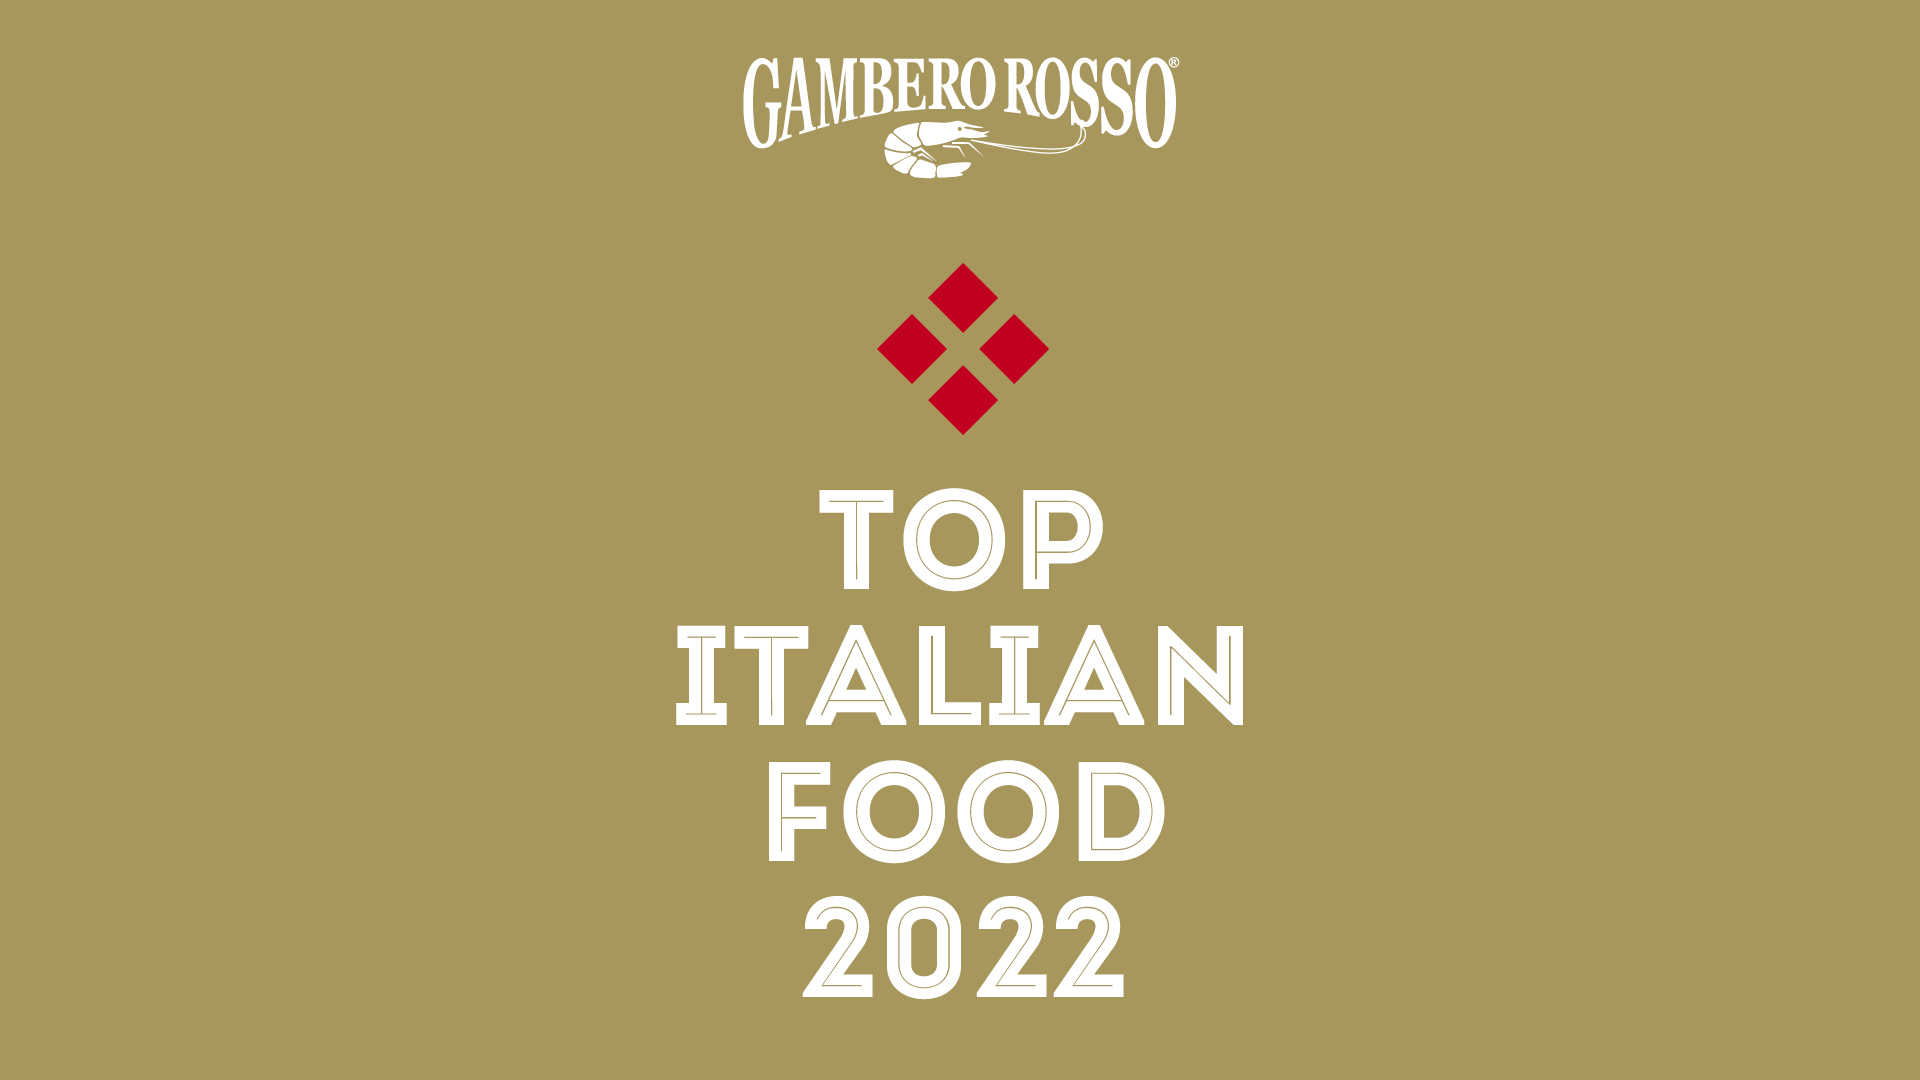 Top Italian Food: ecco chi sono gli ambasciatori del Made in Italy nel mondo